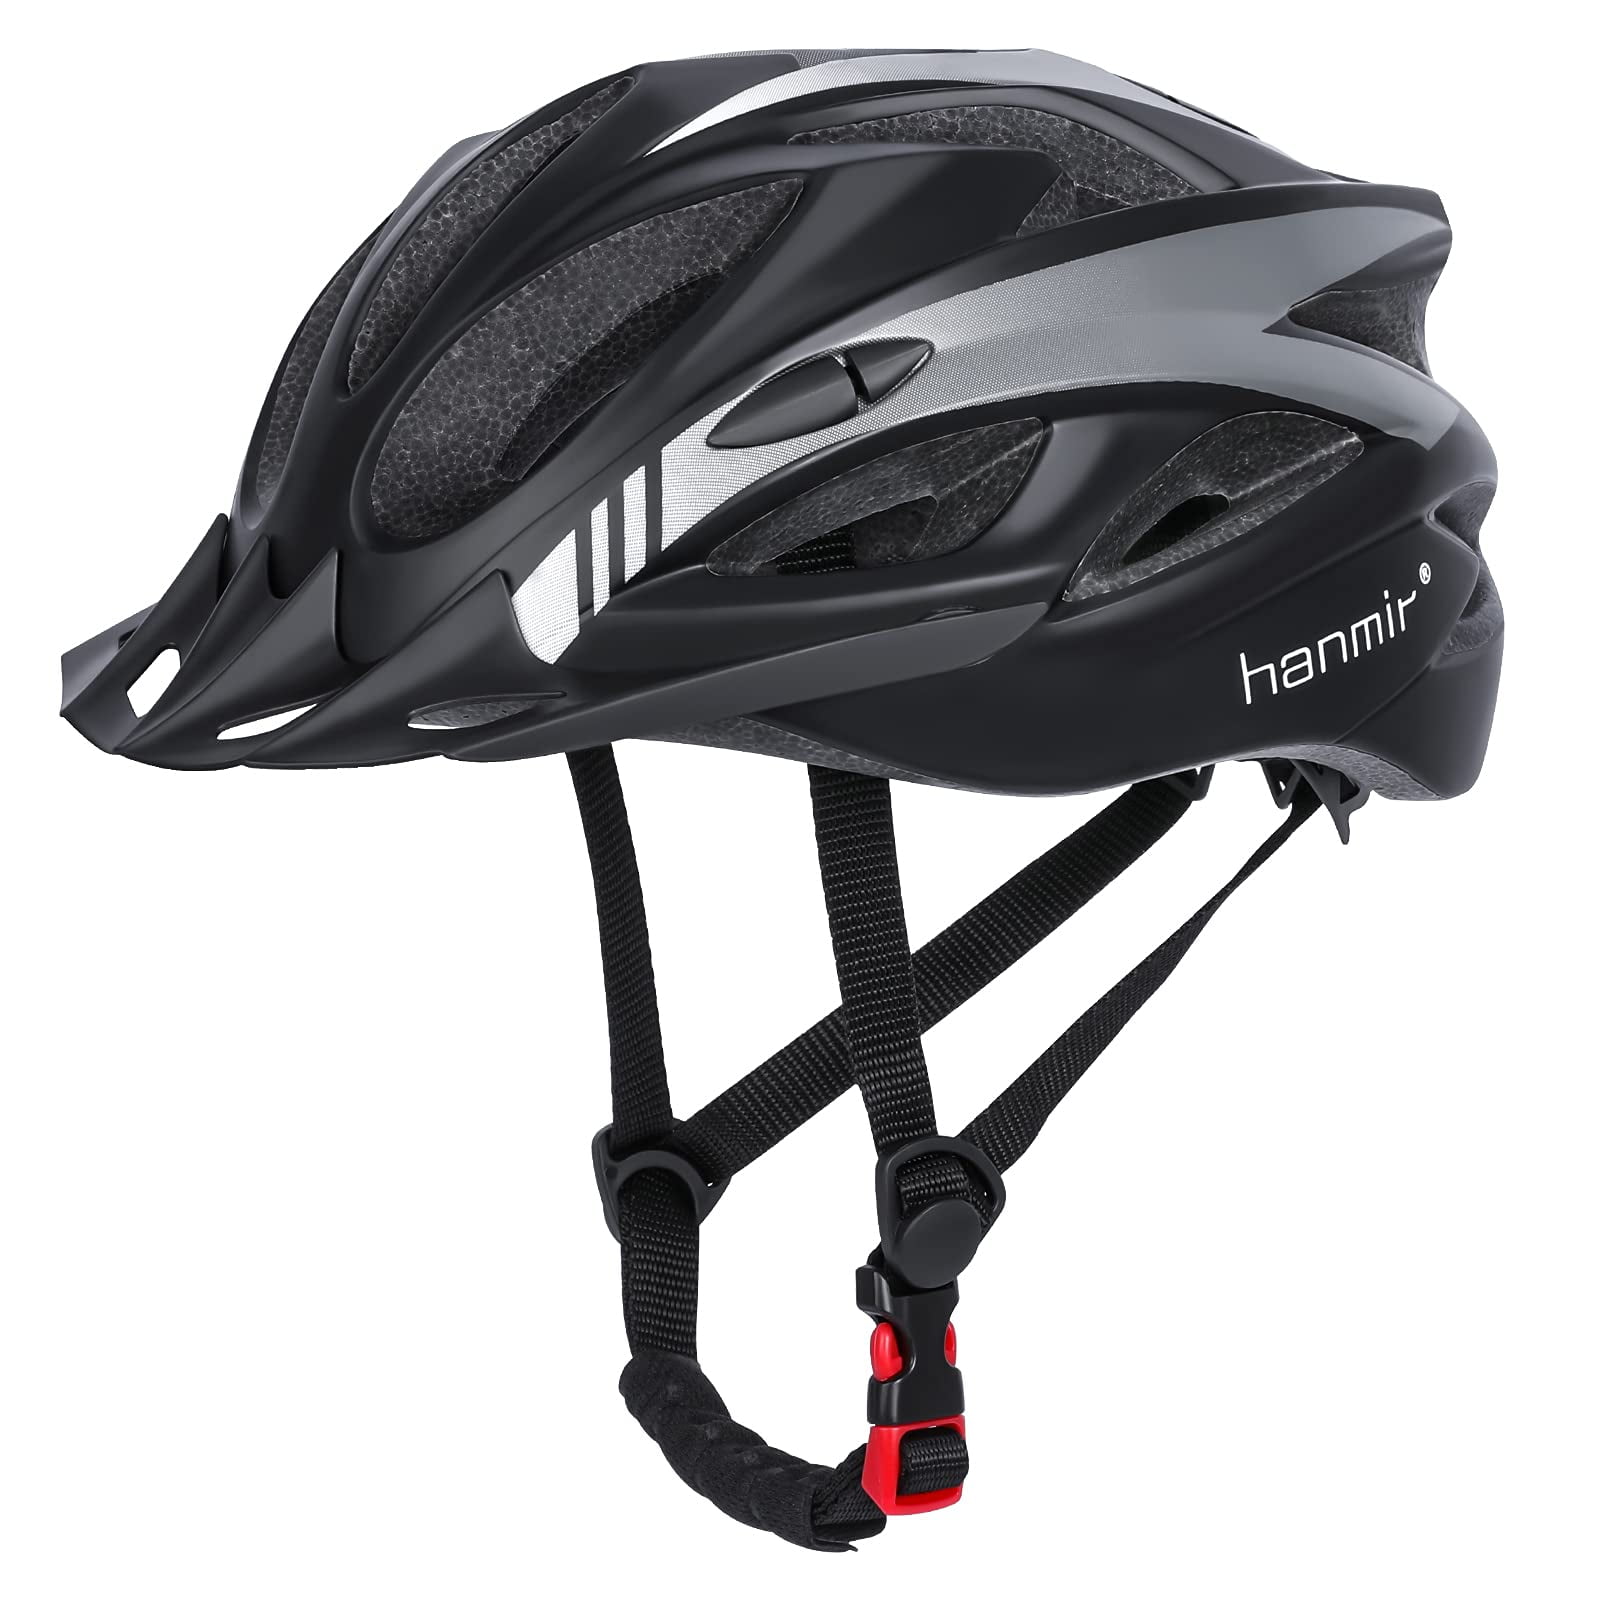 Details about   PHMAX2020 Bike Adult Helmet Ultra Light One Size ajustable 21ventsUSA seller 